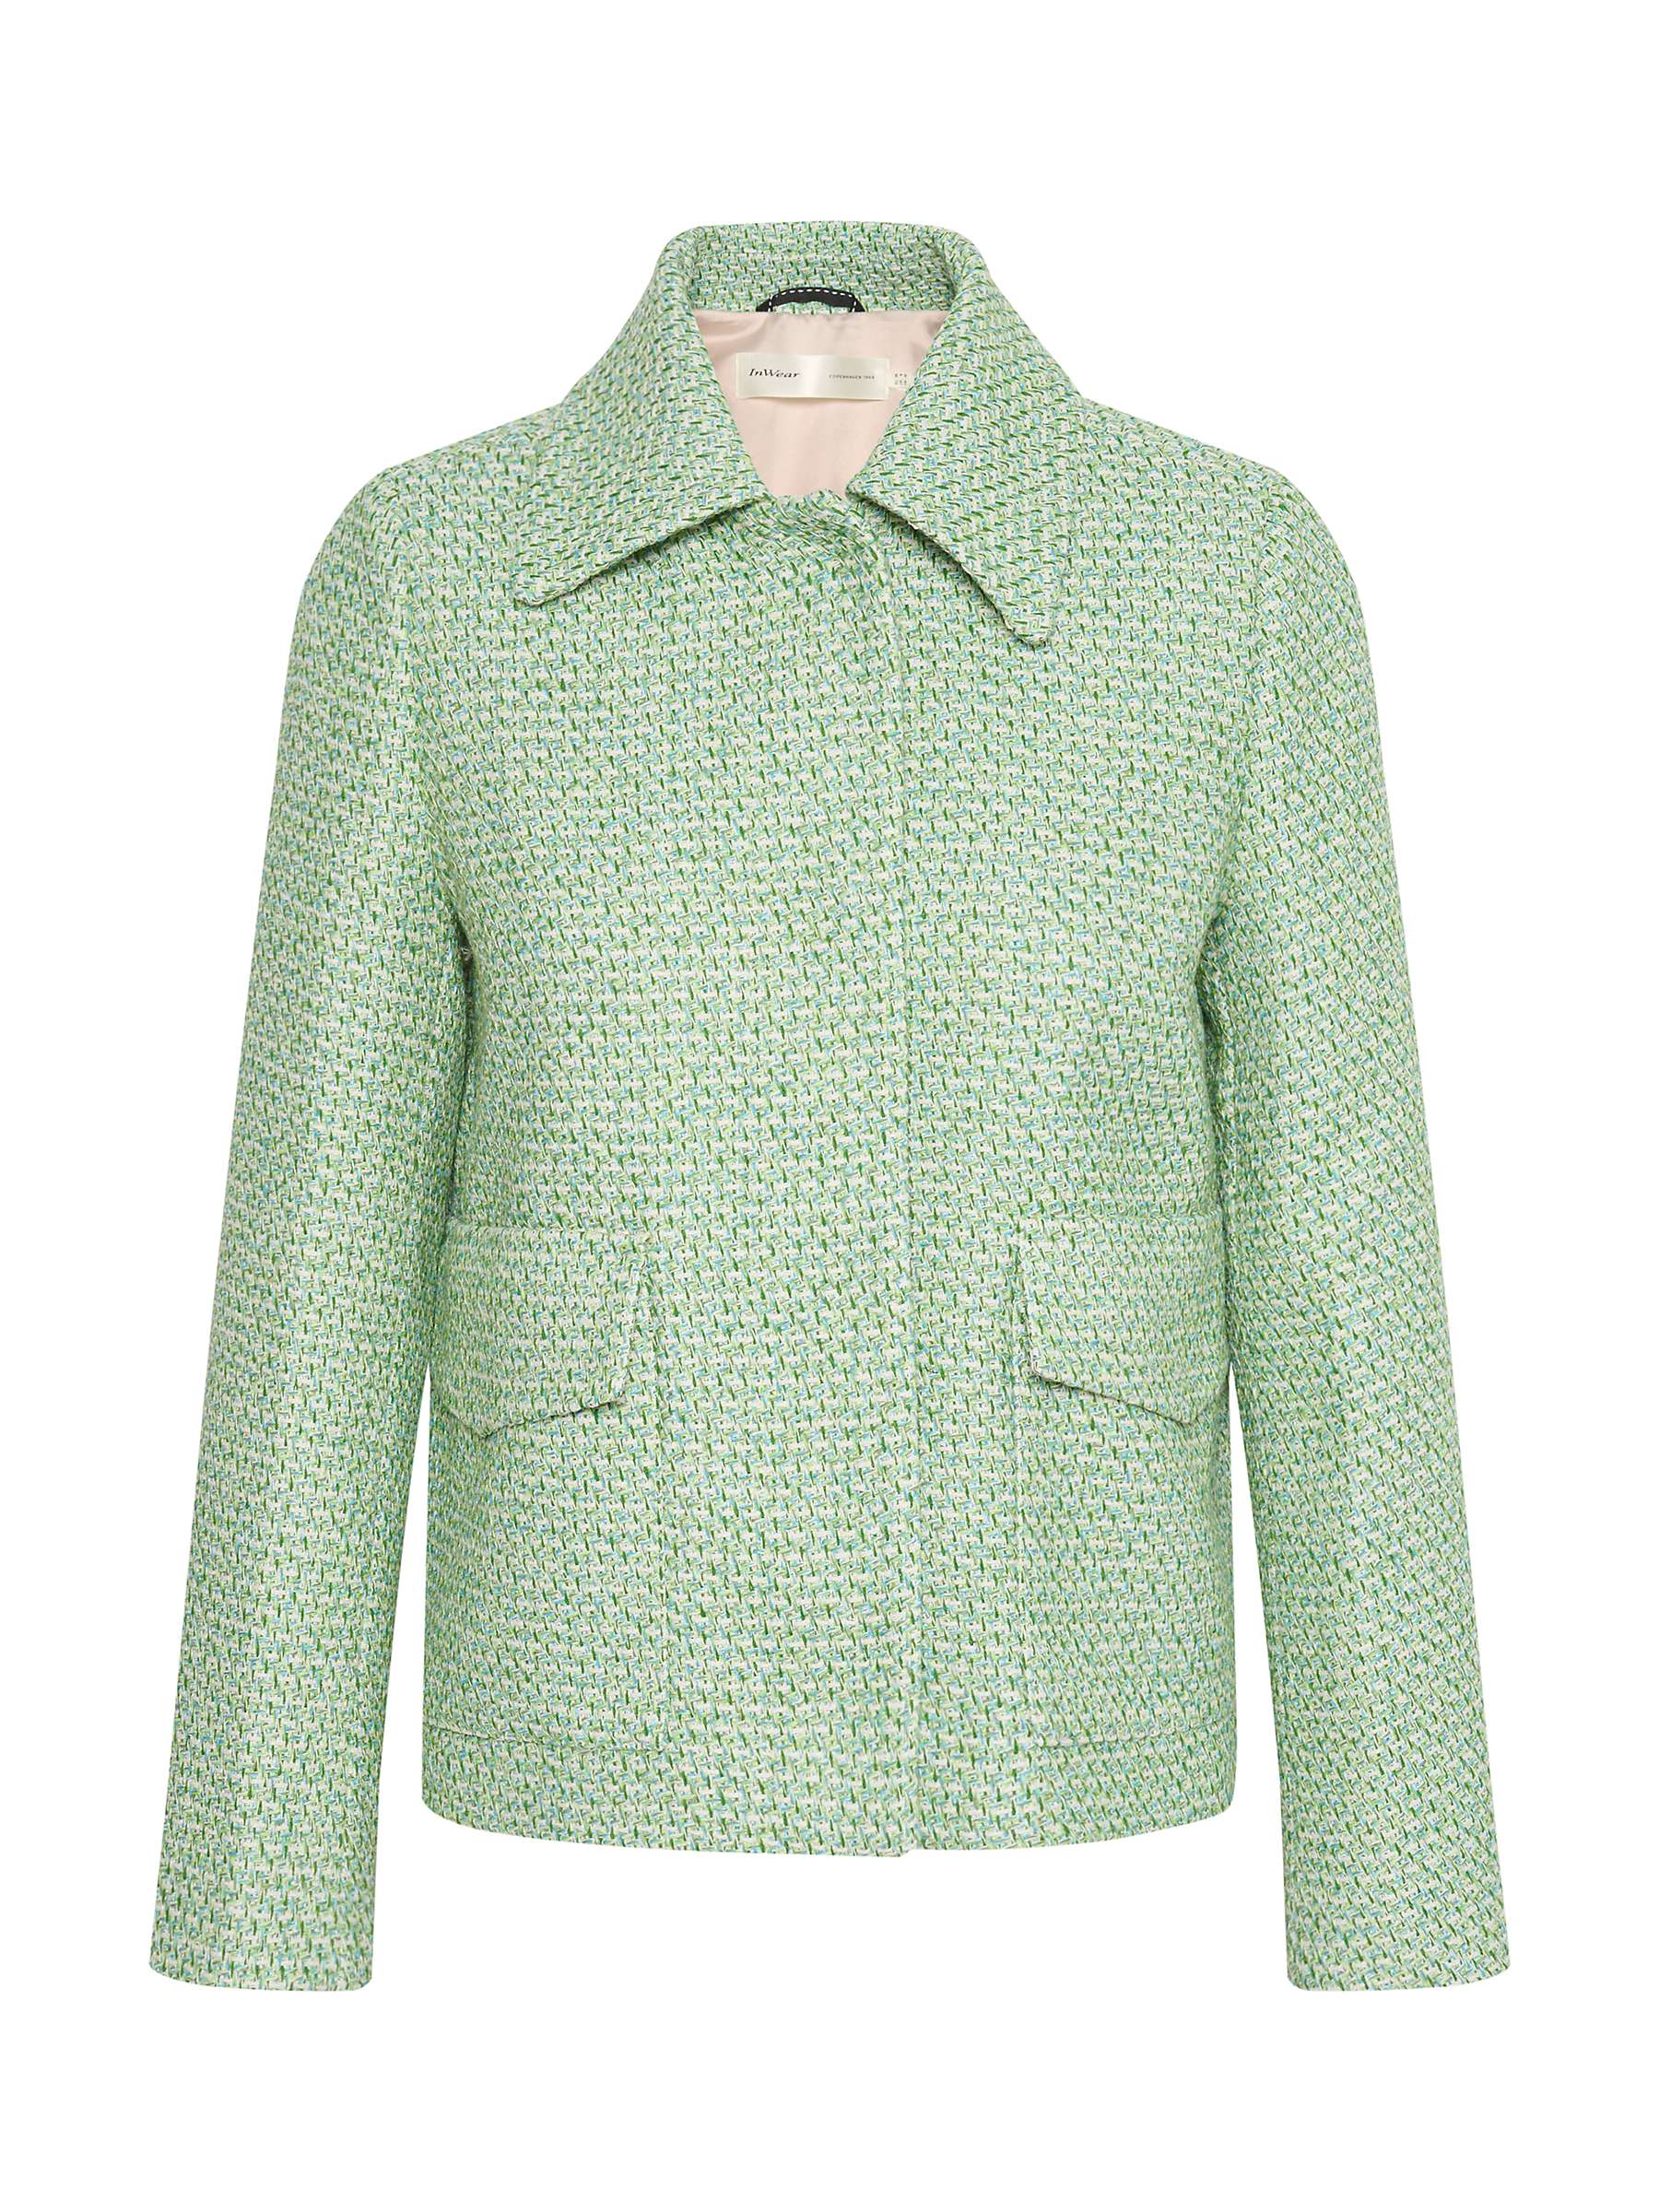 Buy InWear Titan Tweed Jacket, Green Online at johnlewis.com